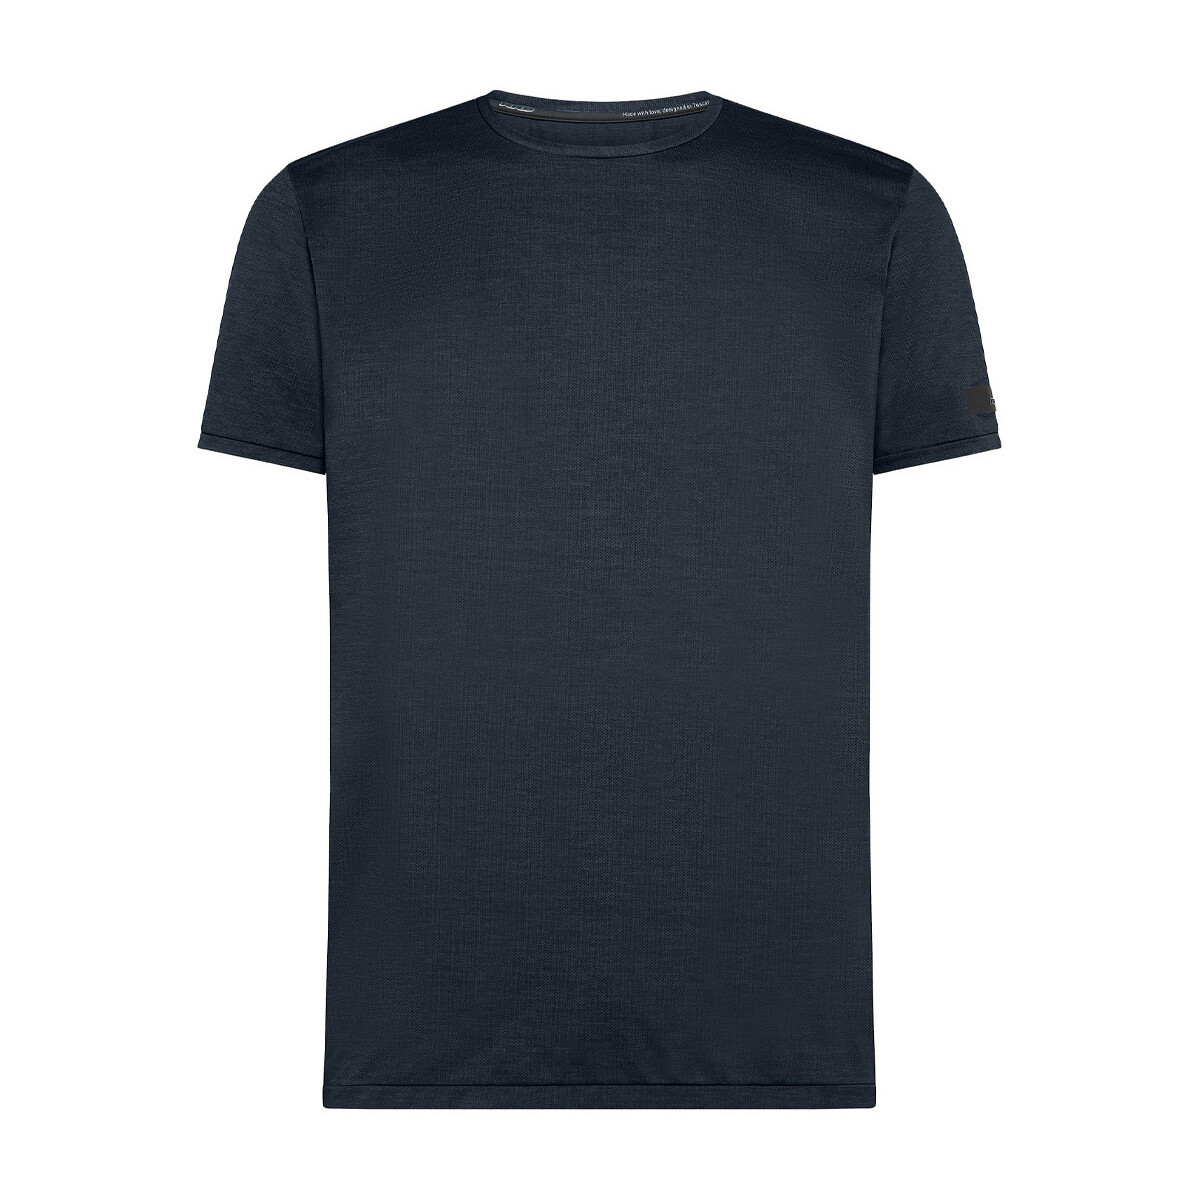 Abbigliamento Uomo T-shirt maniche corte Rrd - Roberto Ricci Designs 24215-60 Blu